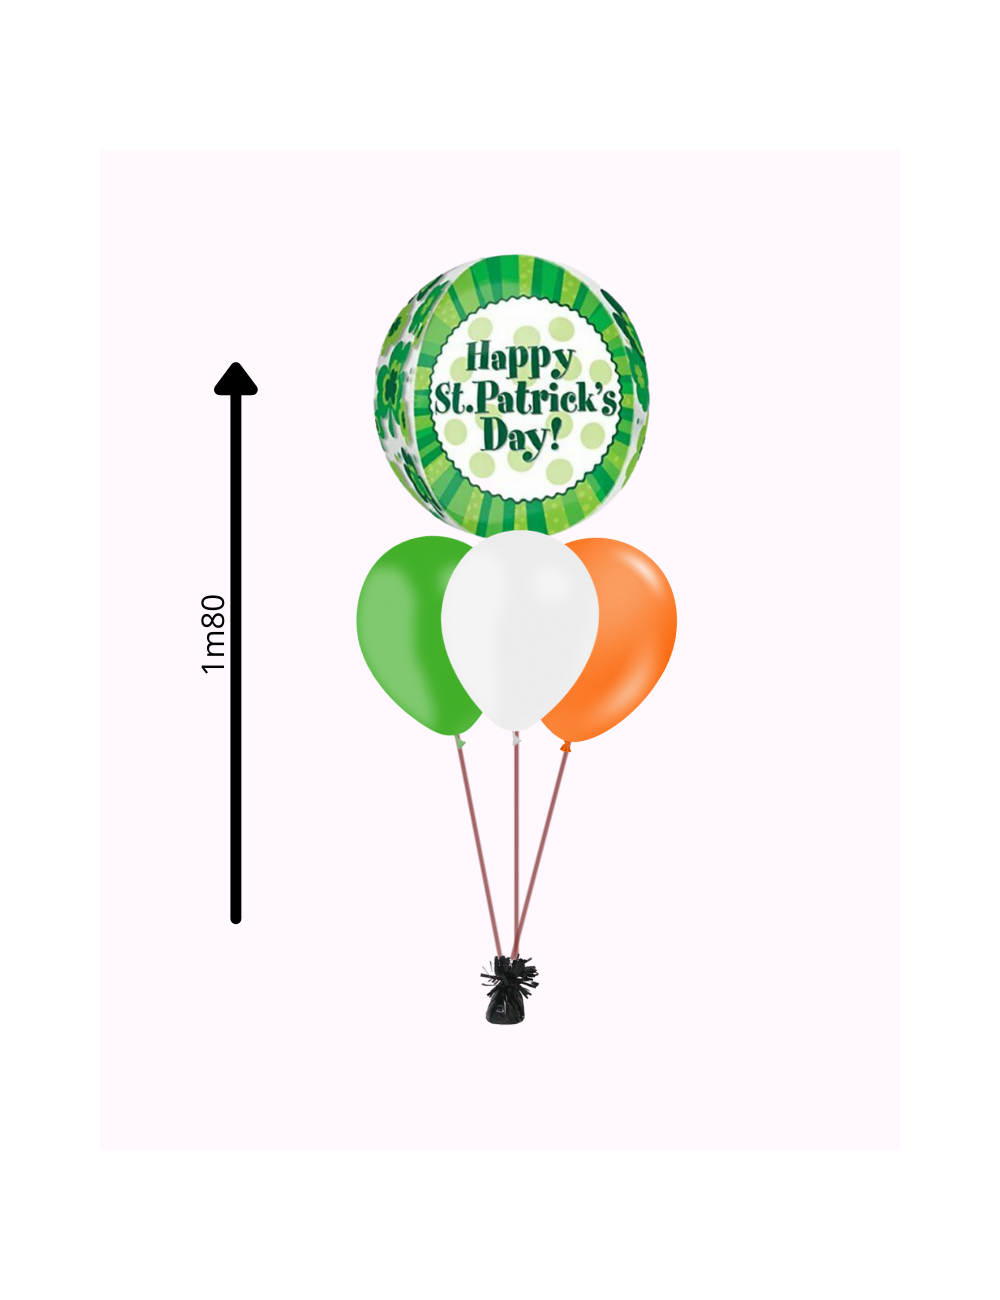 Ballon bubble de St Patrick, ein Bouquet von Ballons